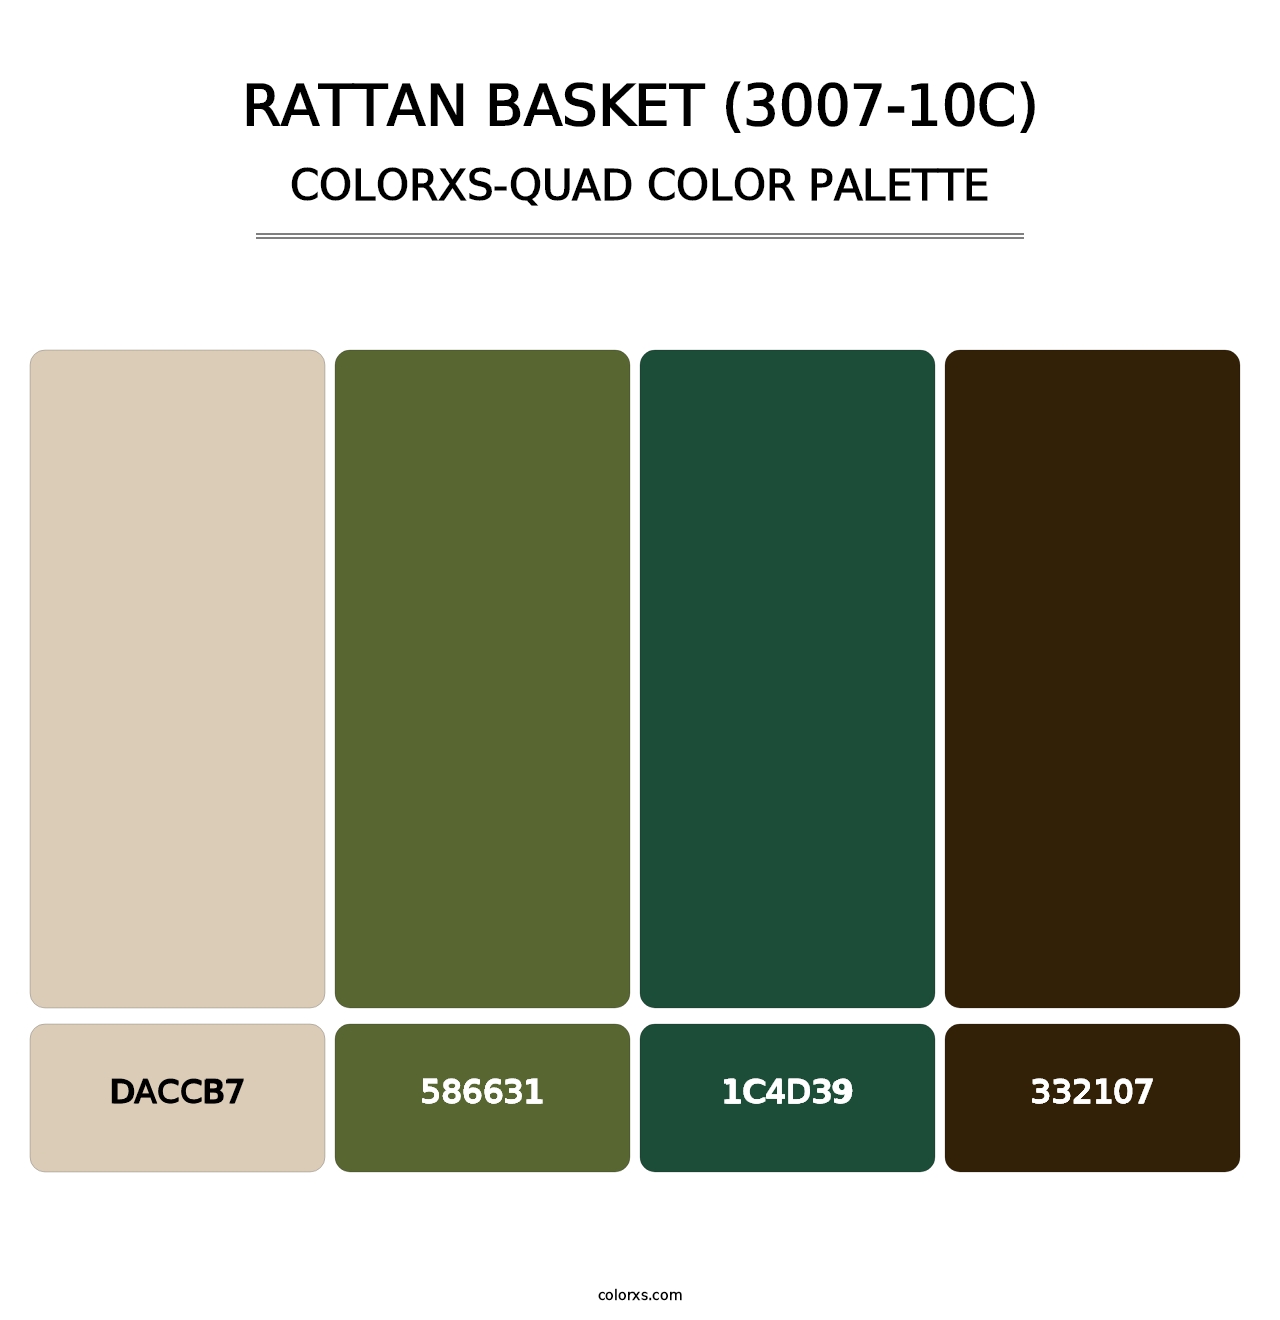 Rattan Basket (3007-10C) - Colorxs Quad Palette